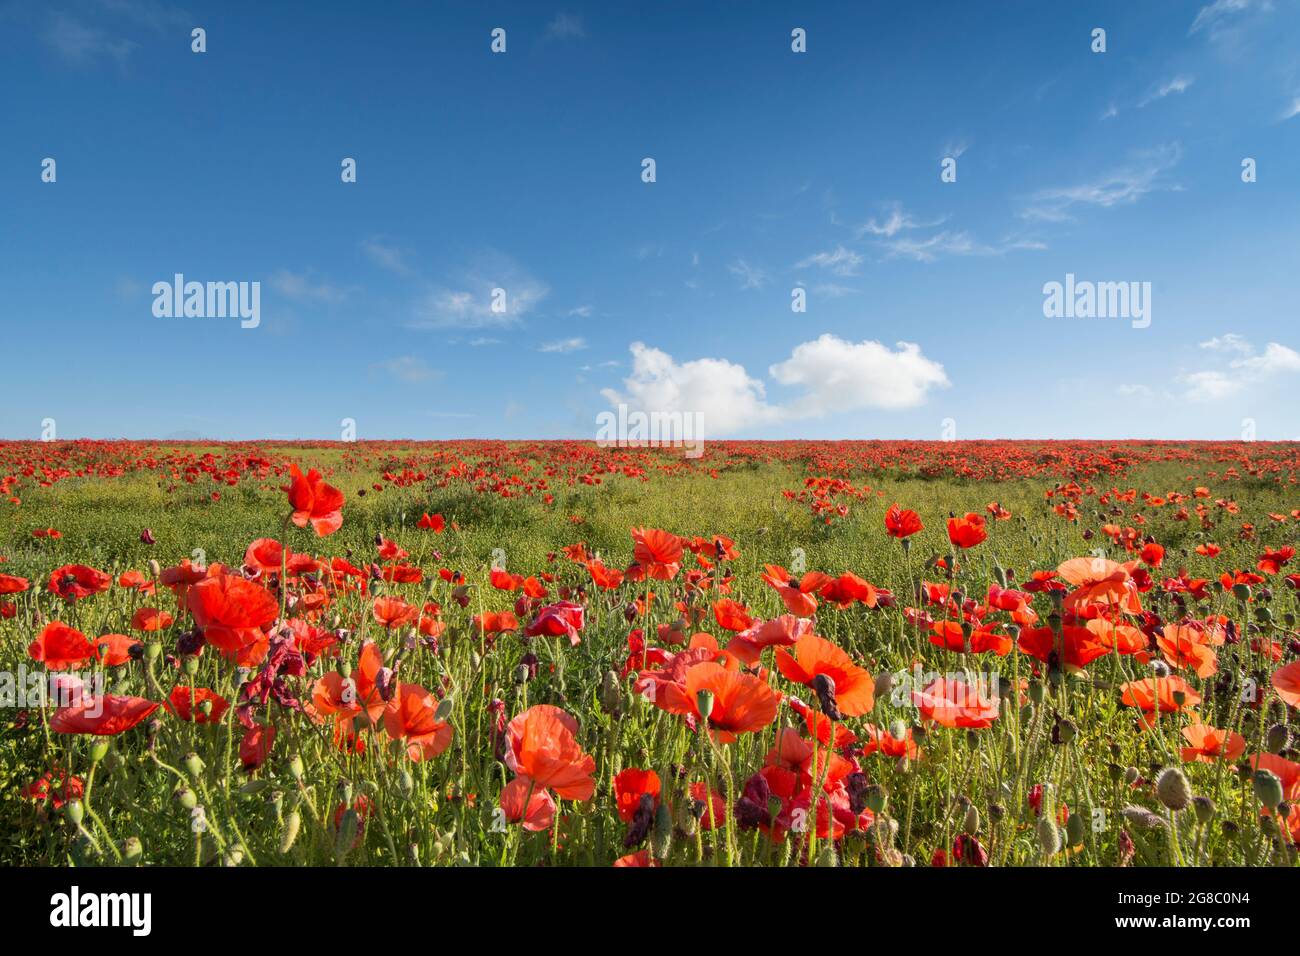 Feld von rotem Mohnblumen an der Seite eines Hügels gegen blauen Himmel mit weißen Wolken, Mohnblumen an der Skyline, horizon.growing im Feld von Flachs, Leinsamen, Stockfoto